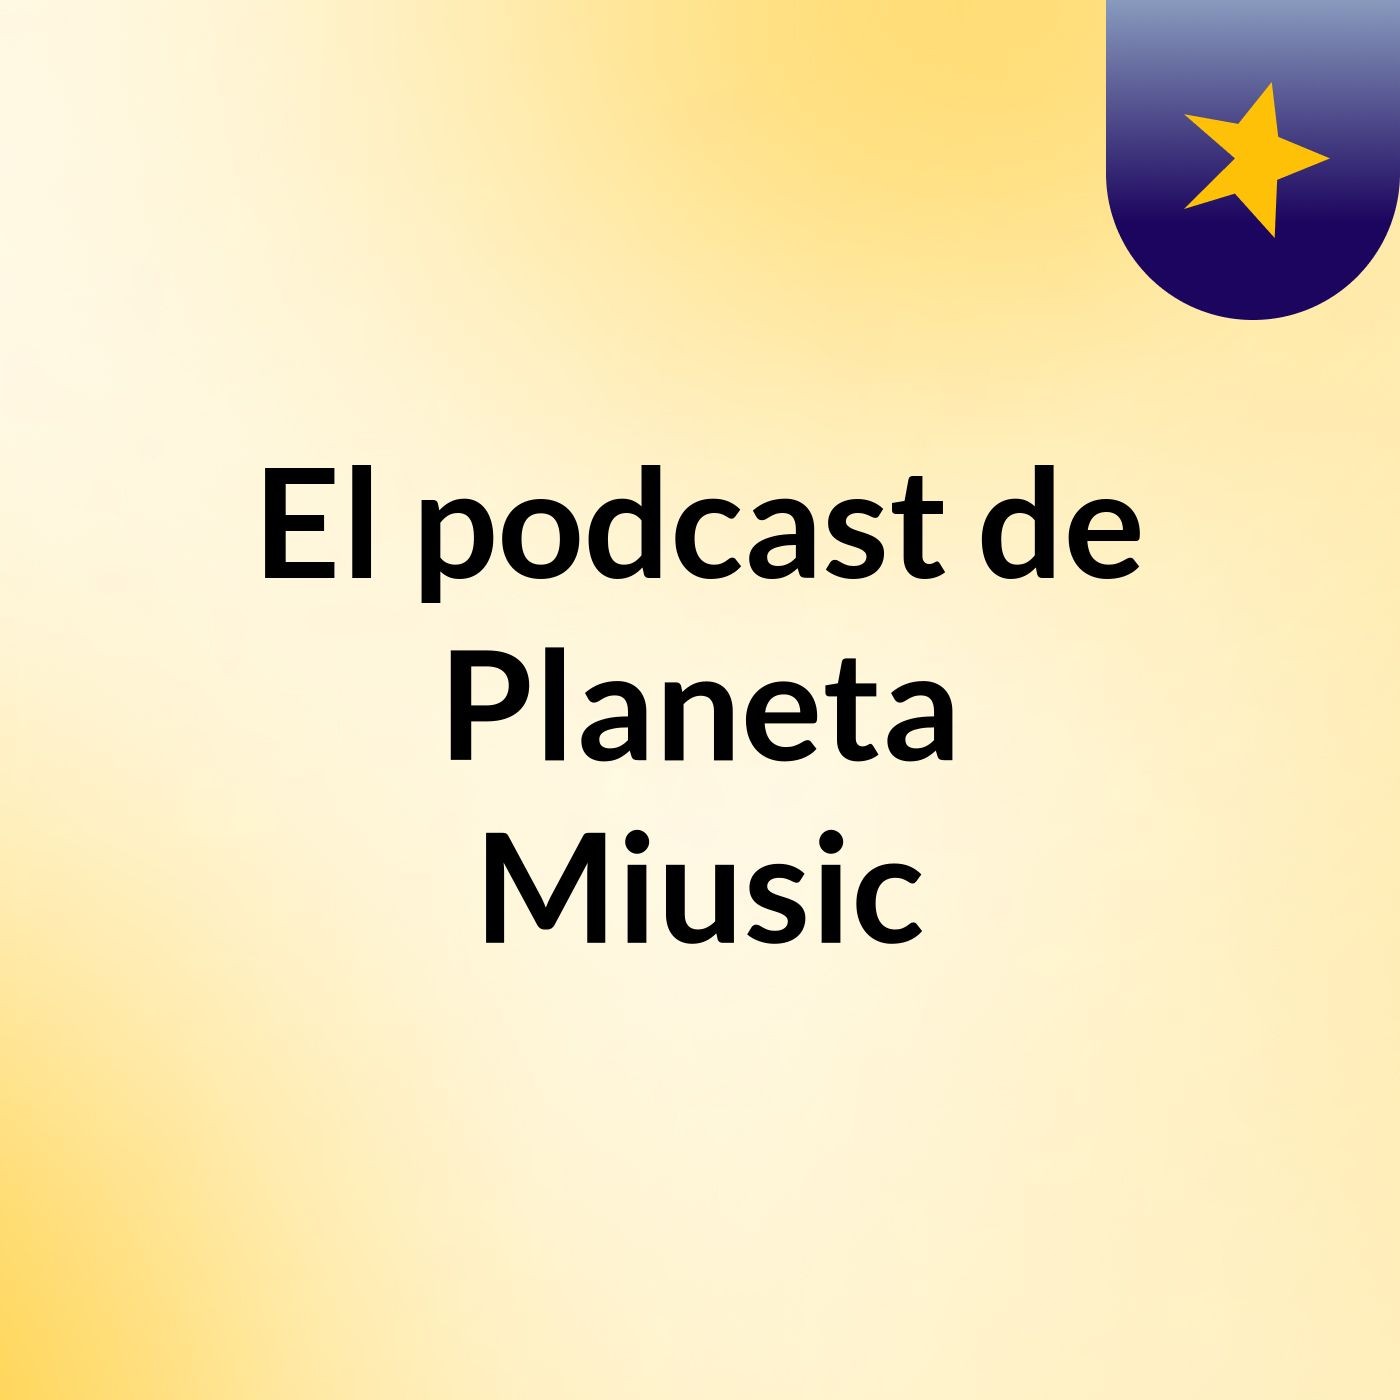 Episodio 3 - El podcast de Planeta Miusic